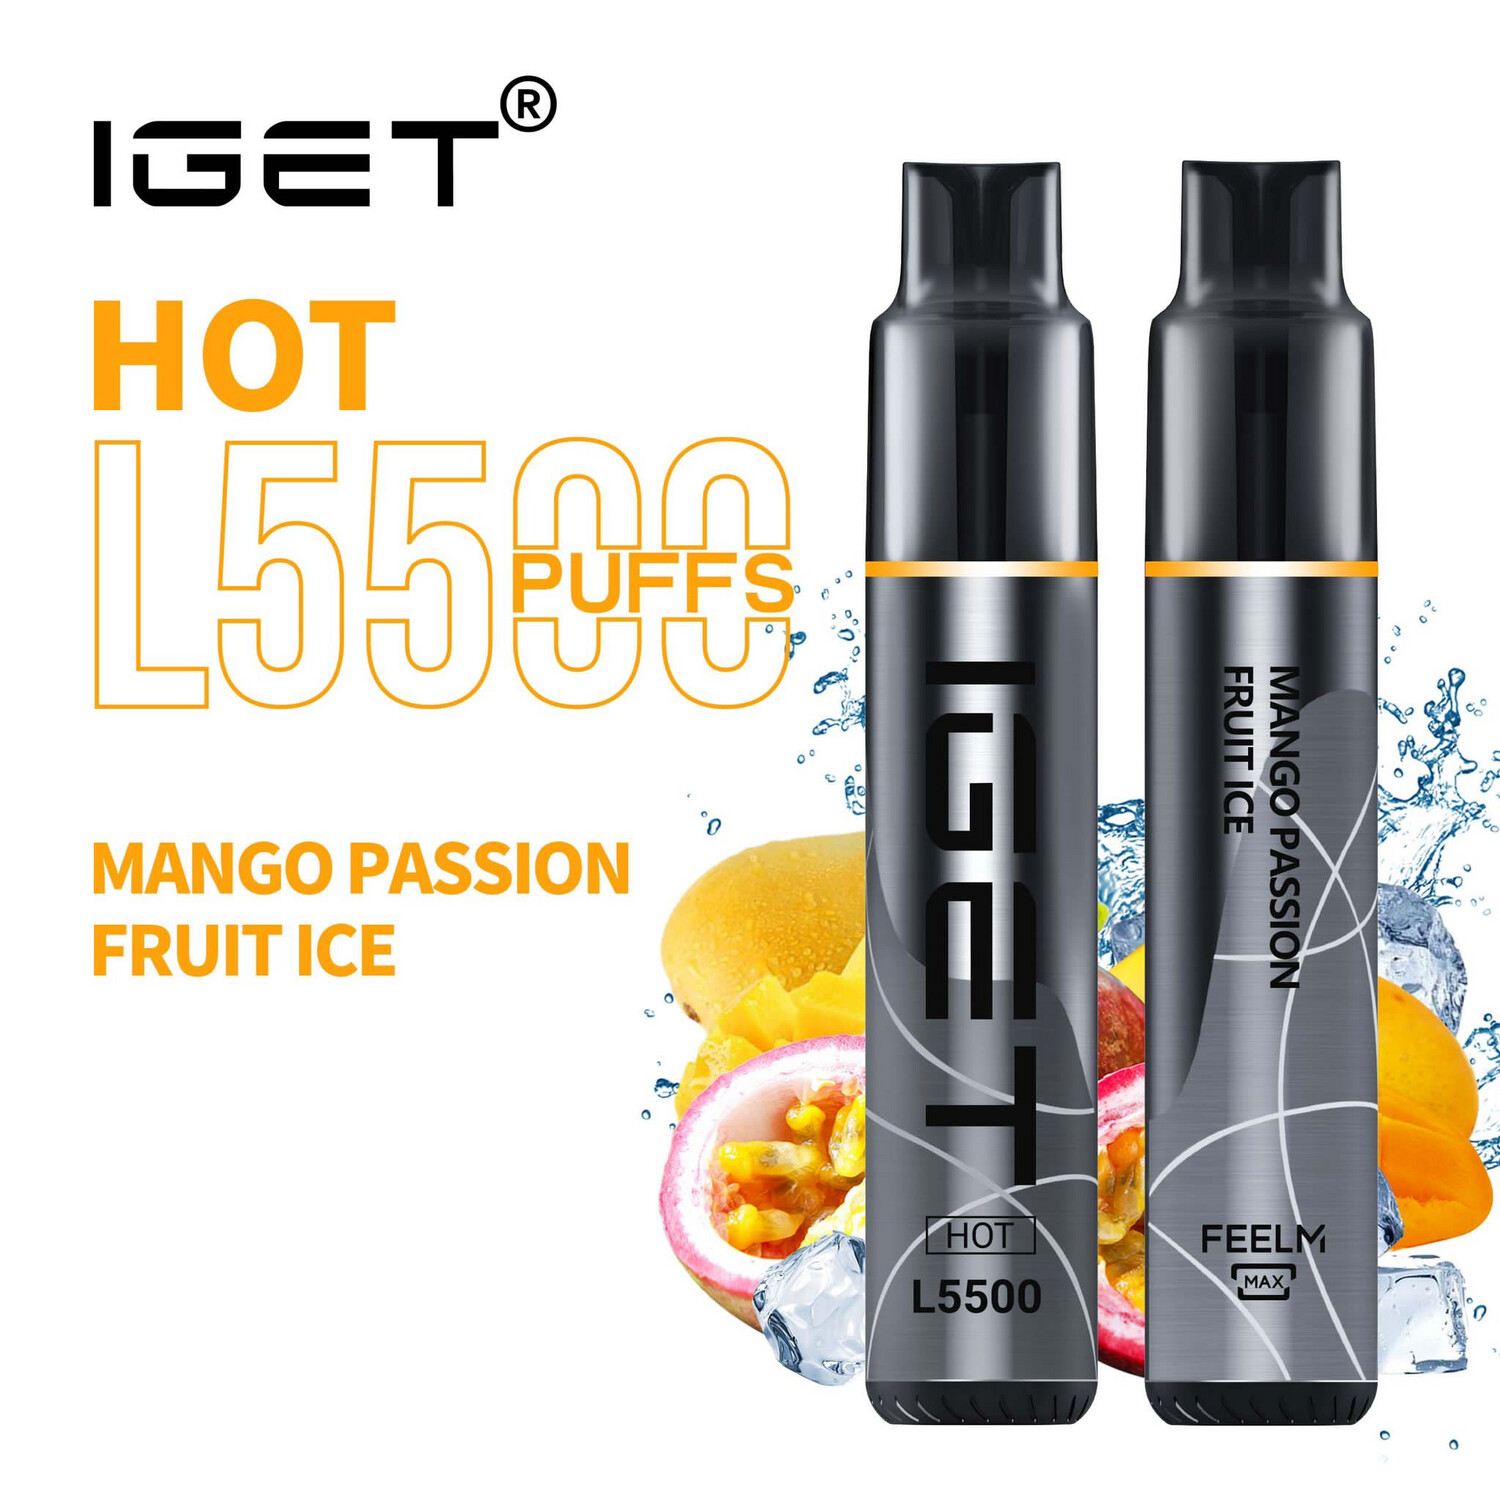 MANGO PASSION FRUIT ICE